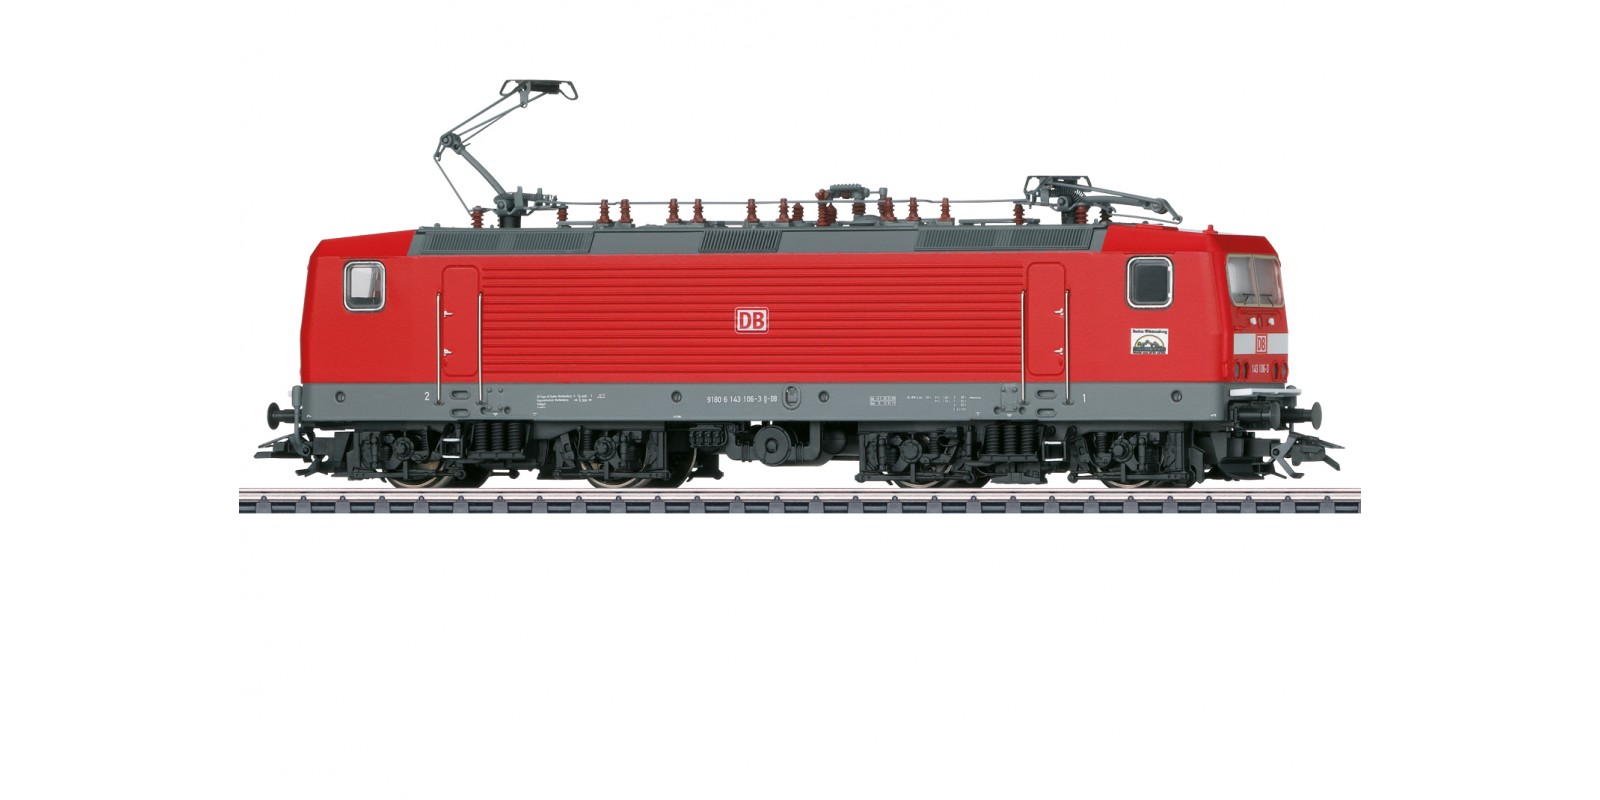 37425 Class 143 Electric Locomotive